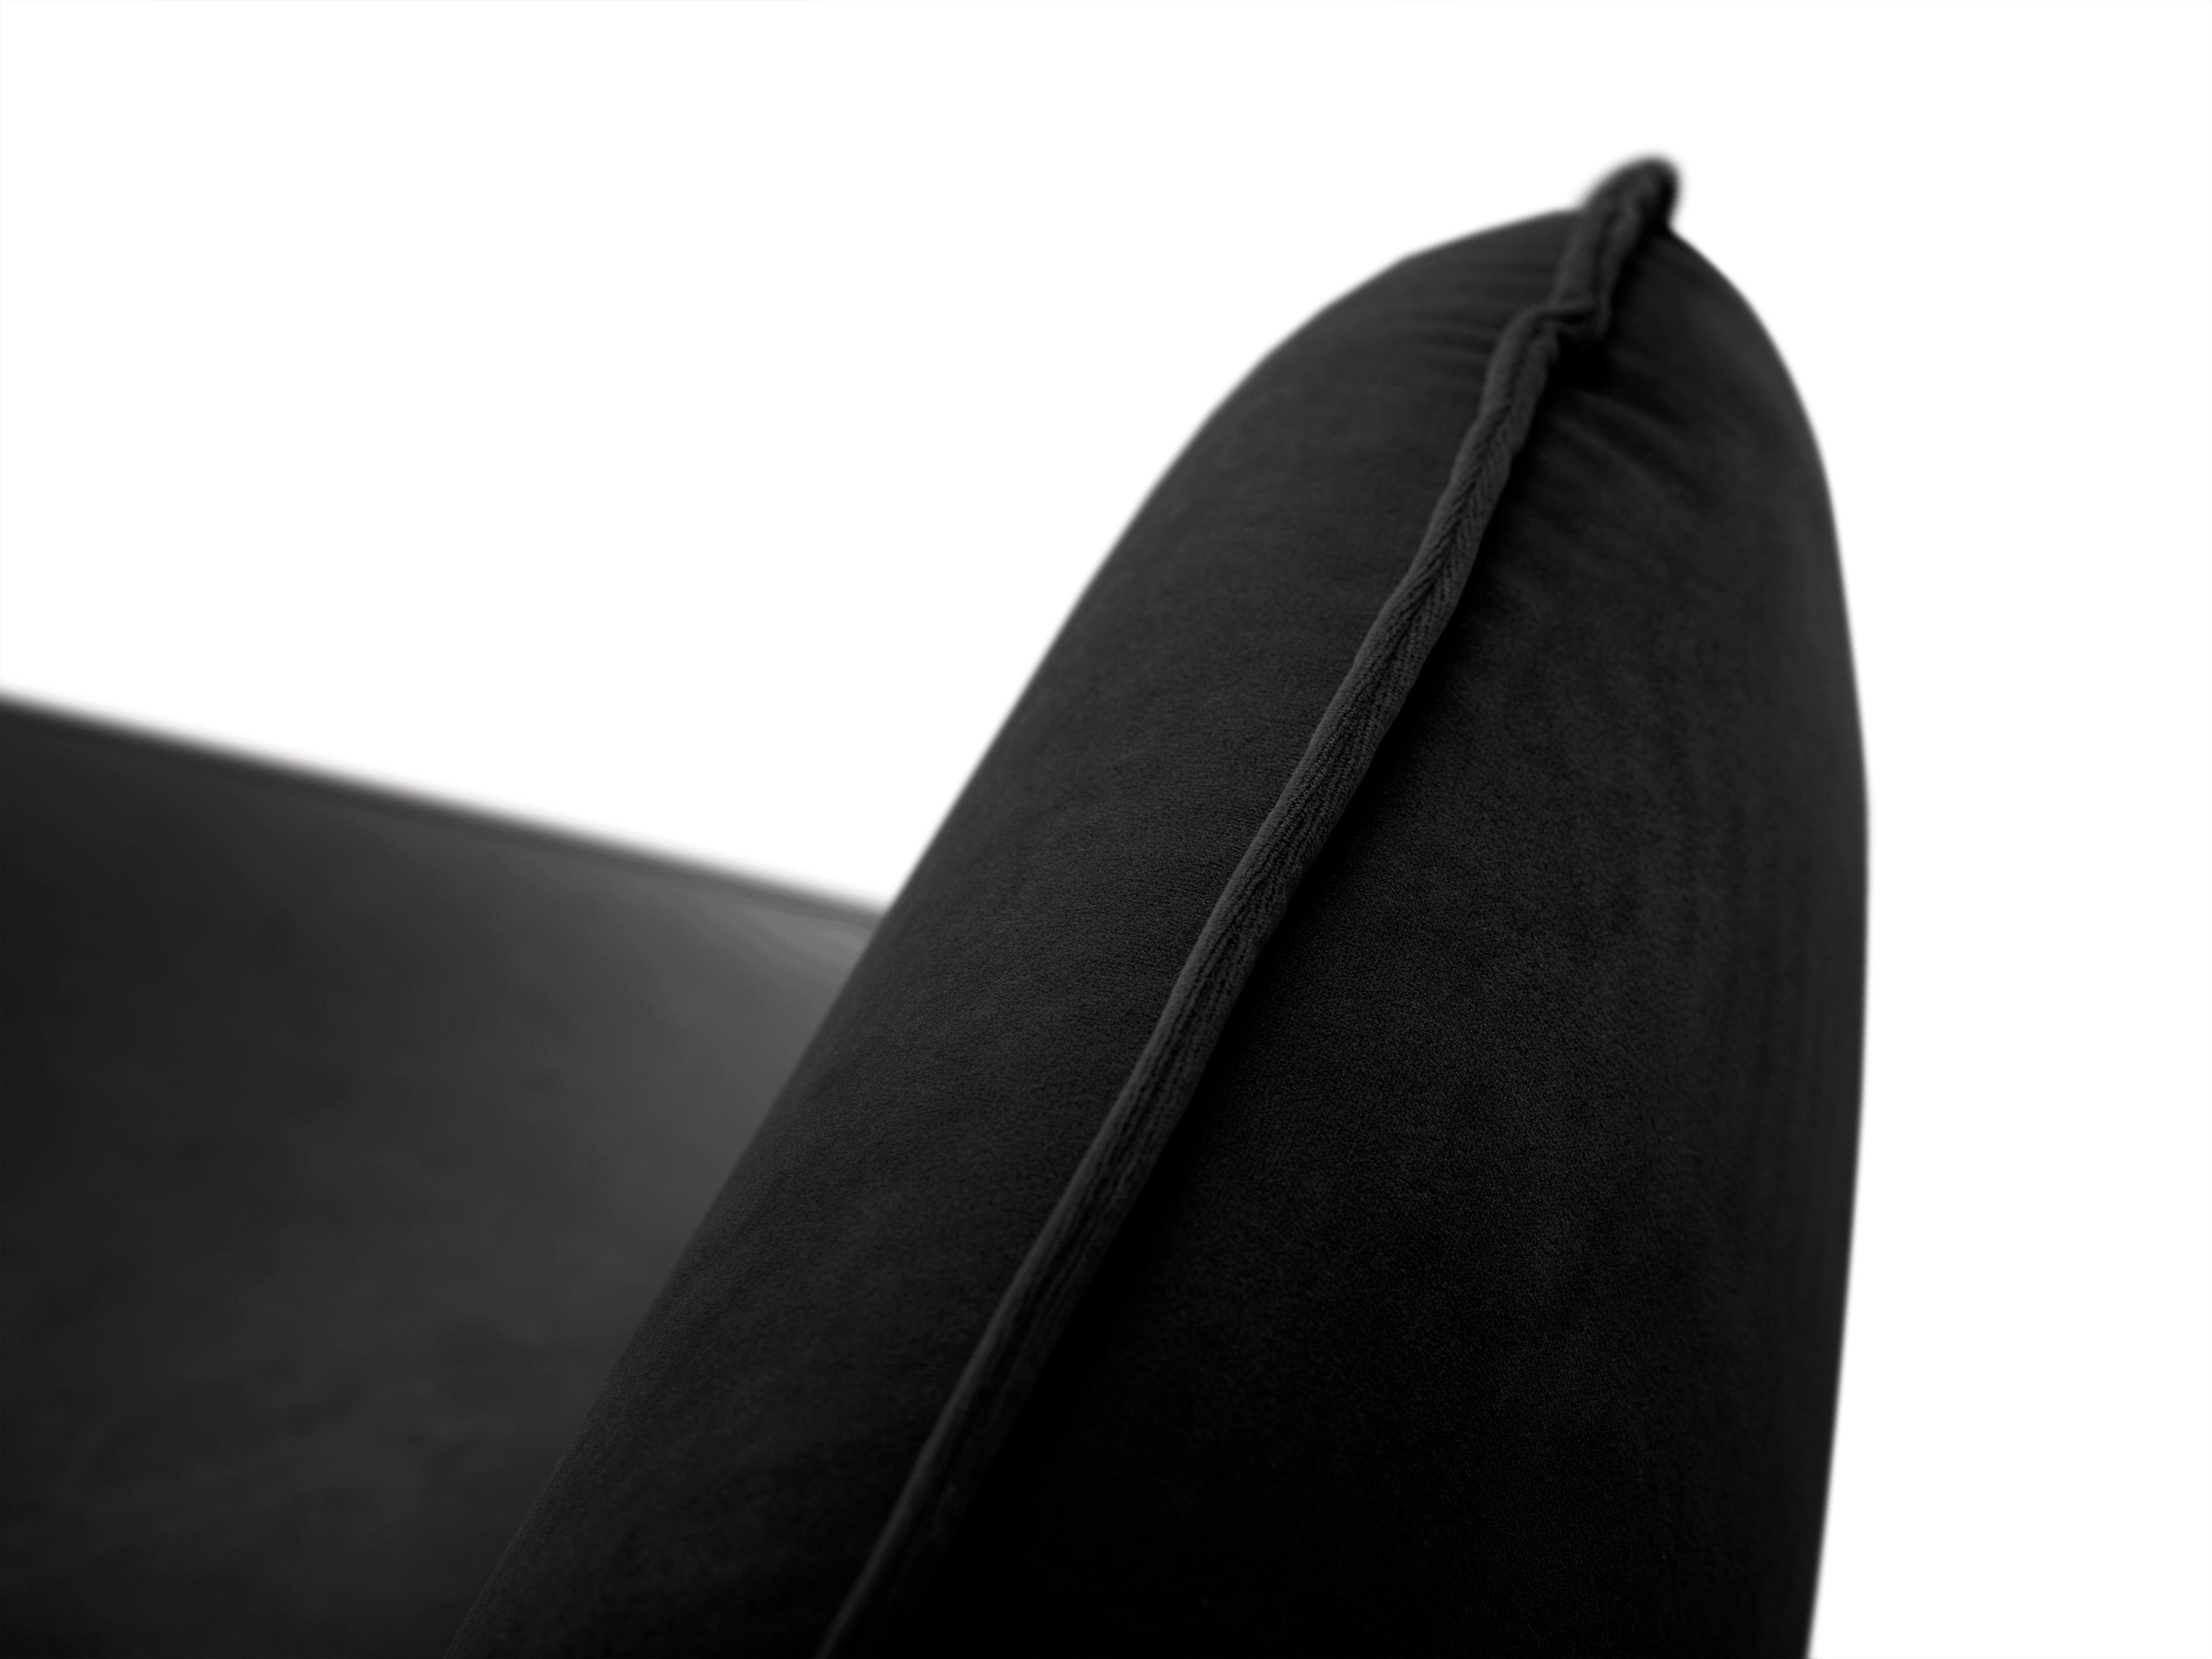 Fotel aksamitny VIENNA czarny z czarną podstawą, Cosmopolitan Design, Eye on Design